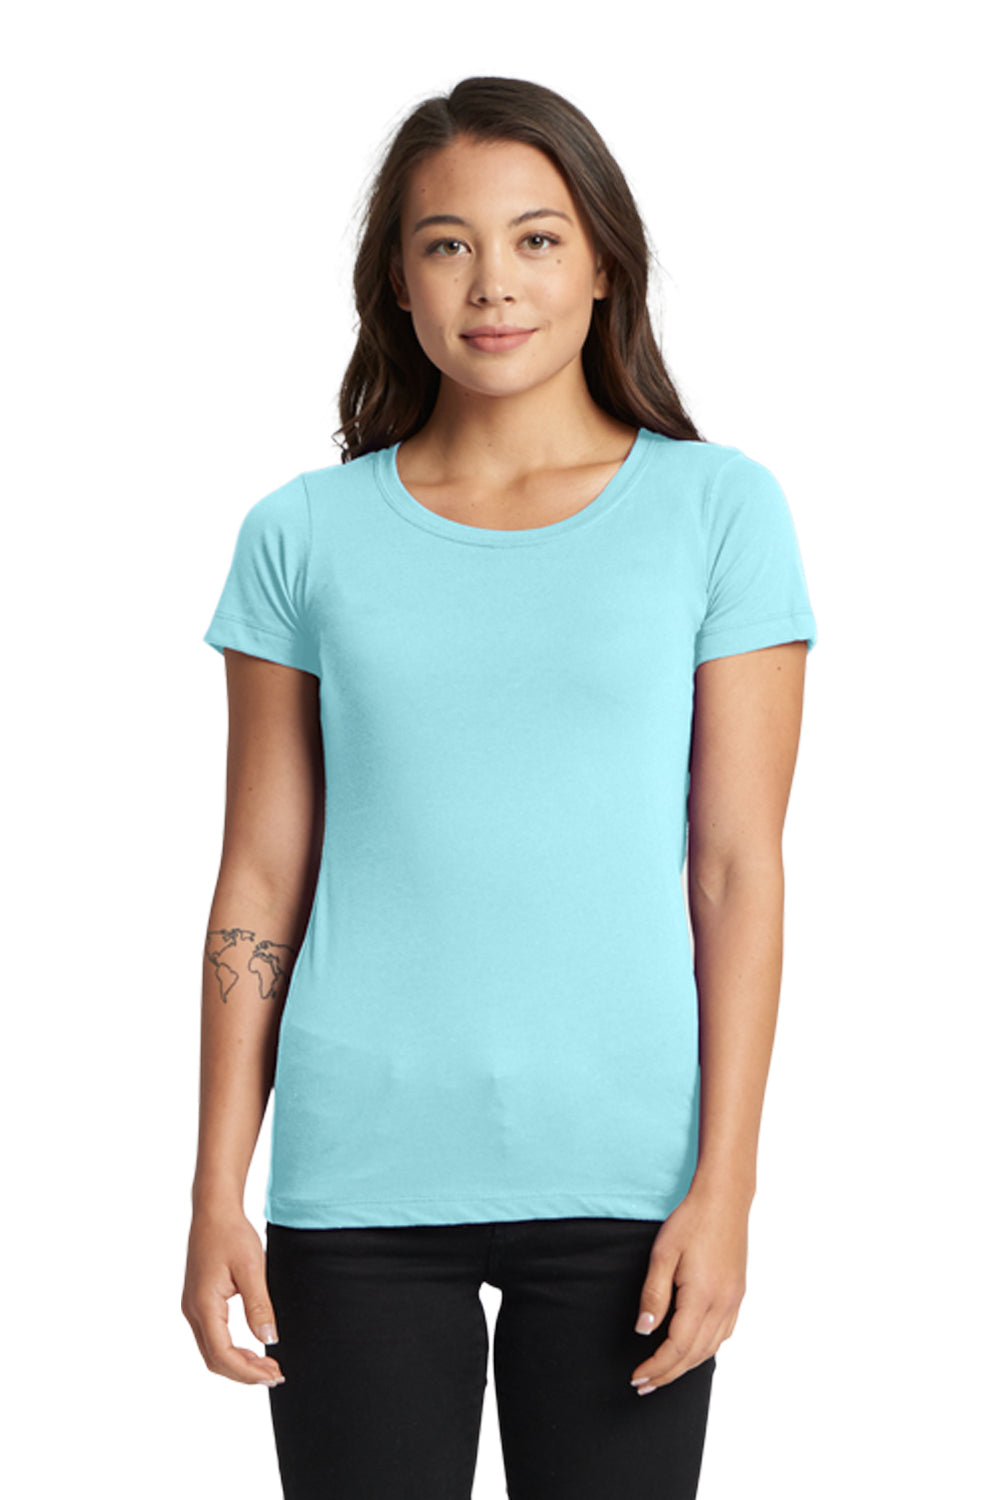 Next Level N1510 Womens Ideal Jersey Short Sleeve Crewneck T-Shirt Cancun Blue Front